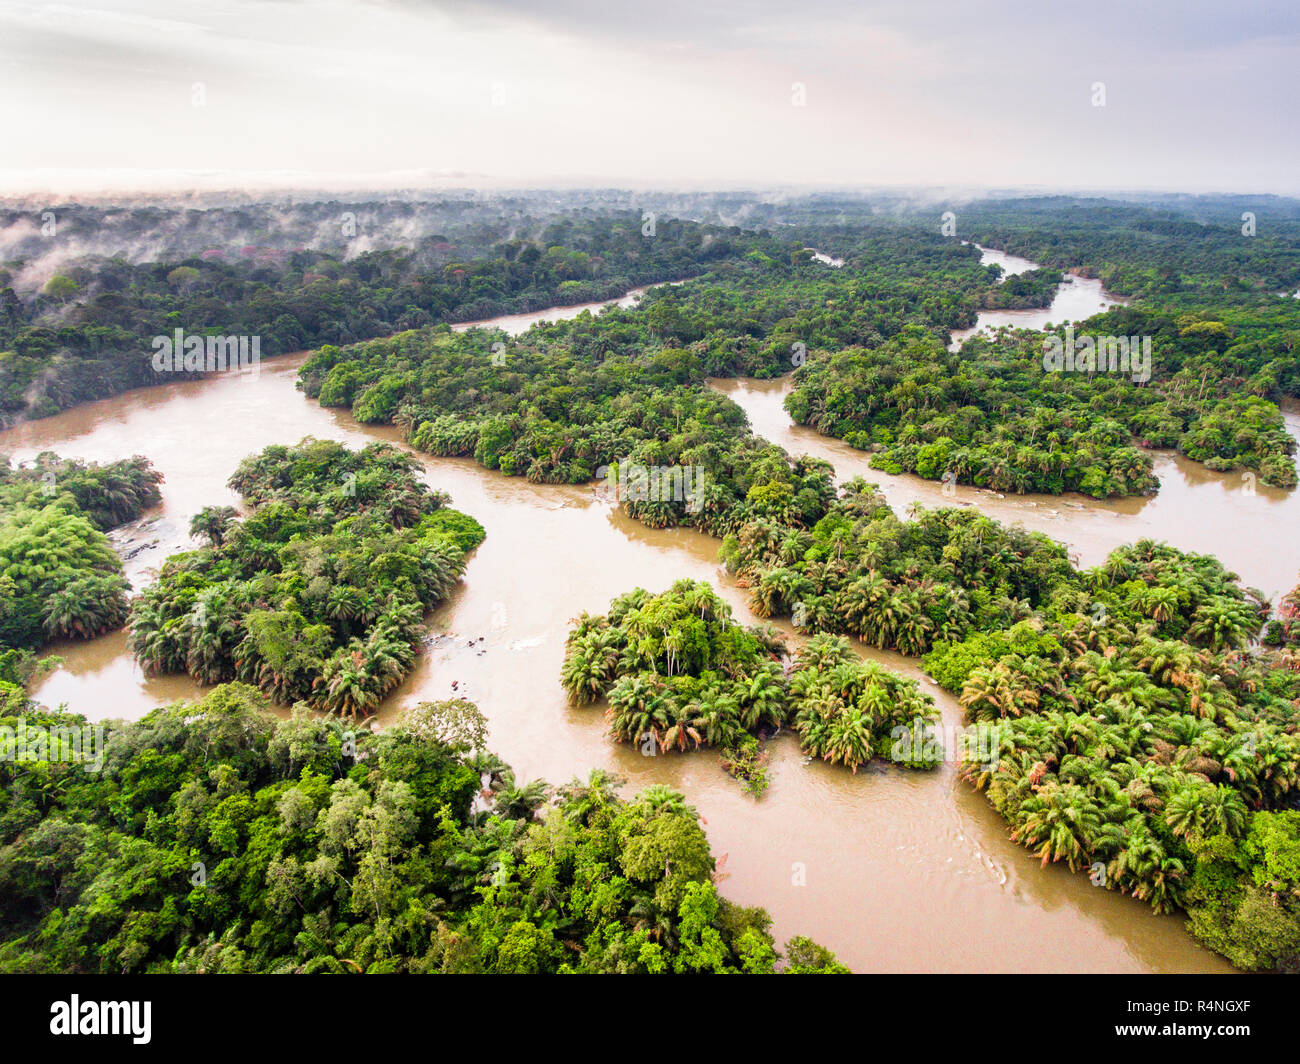 Moa River (Sierra Leone drone image) Stock Photo